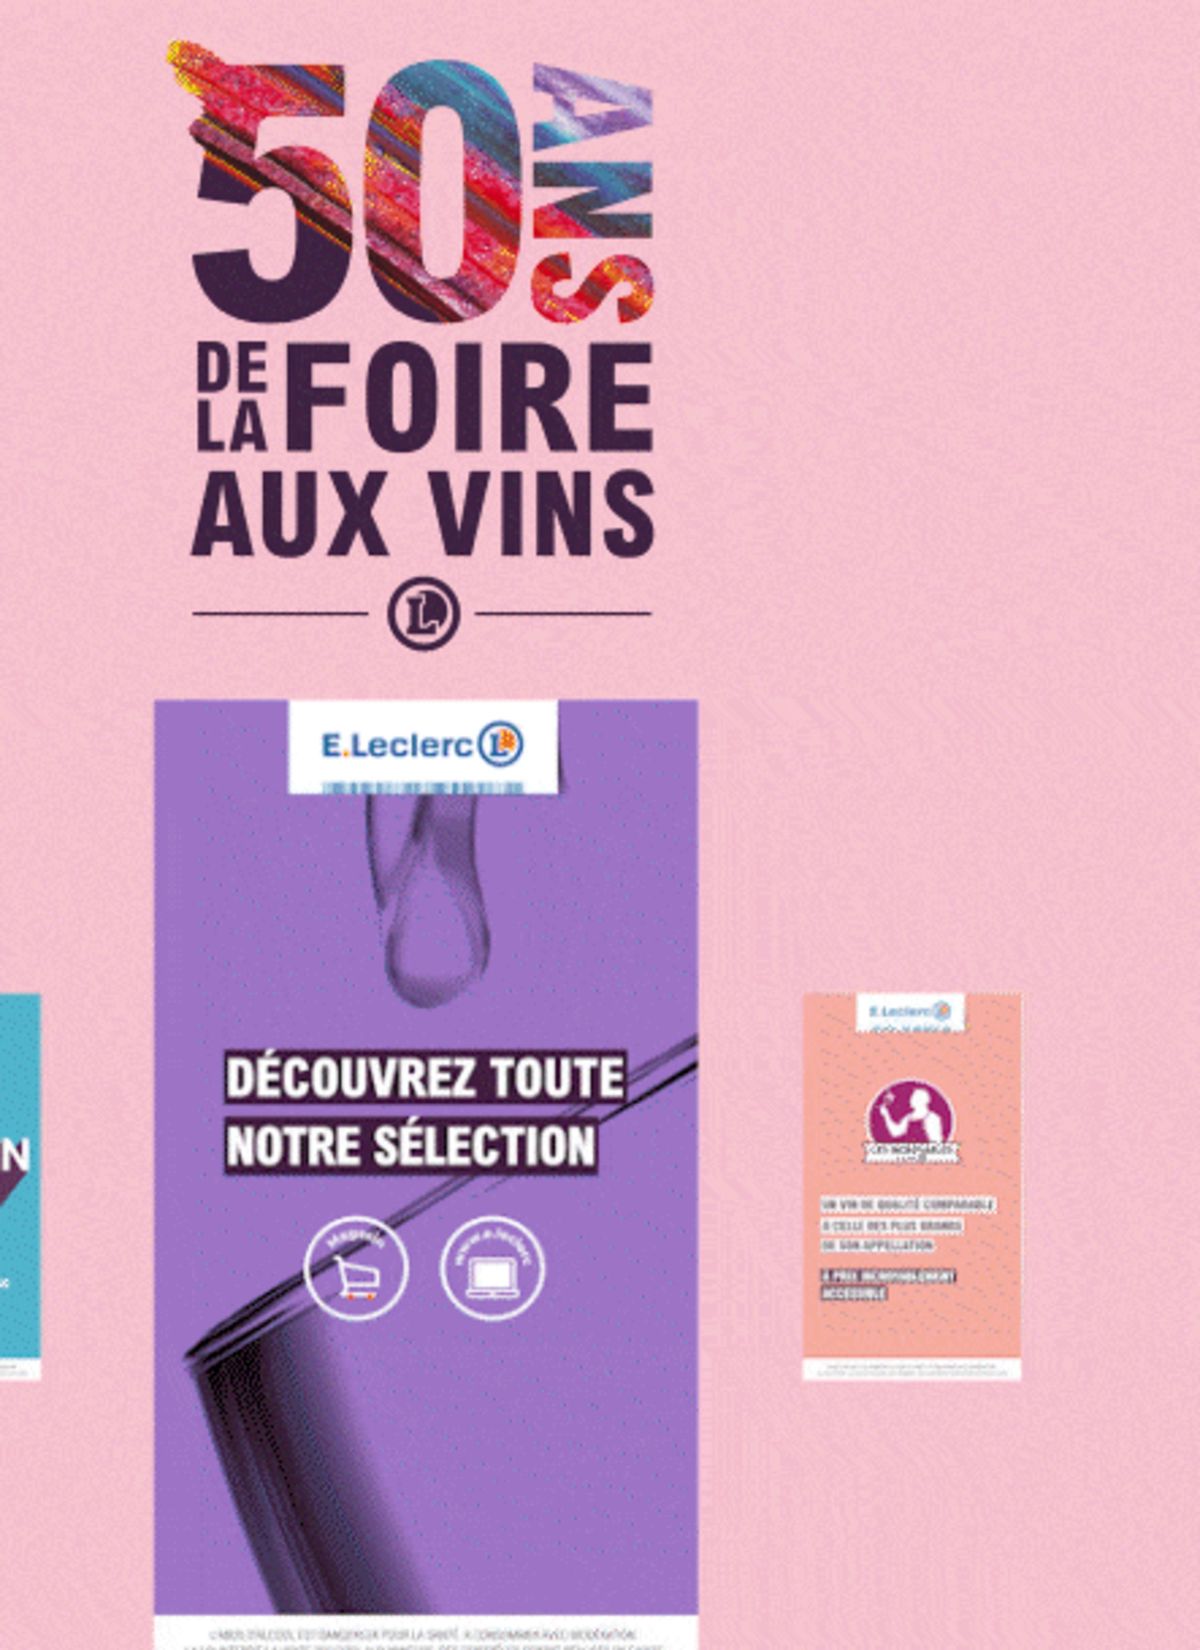 Catalogue Foire Aux Vins - Mixte, page 00411